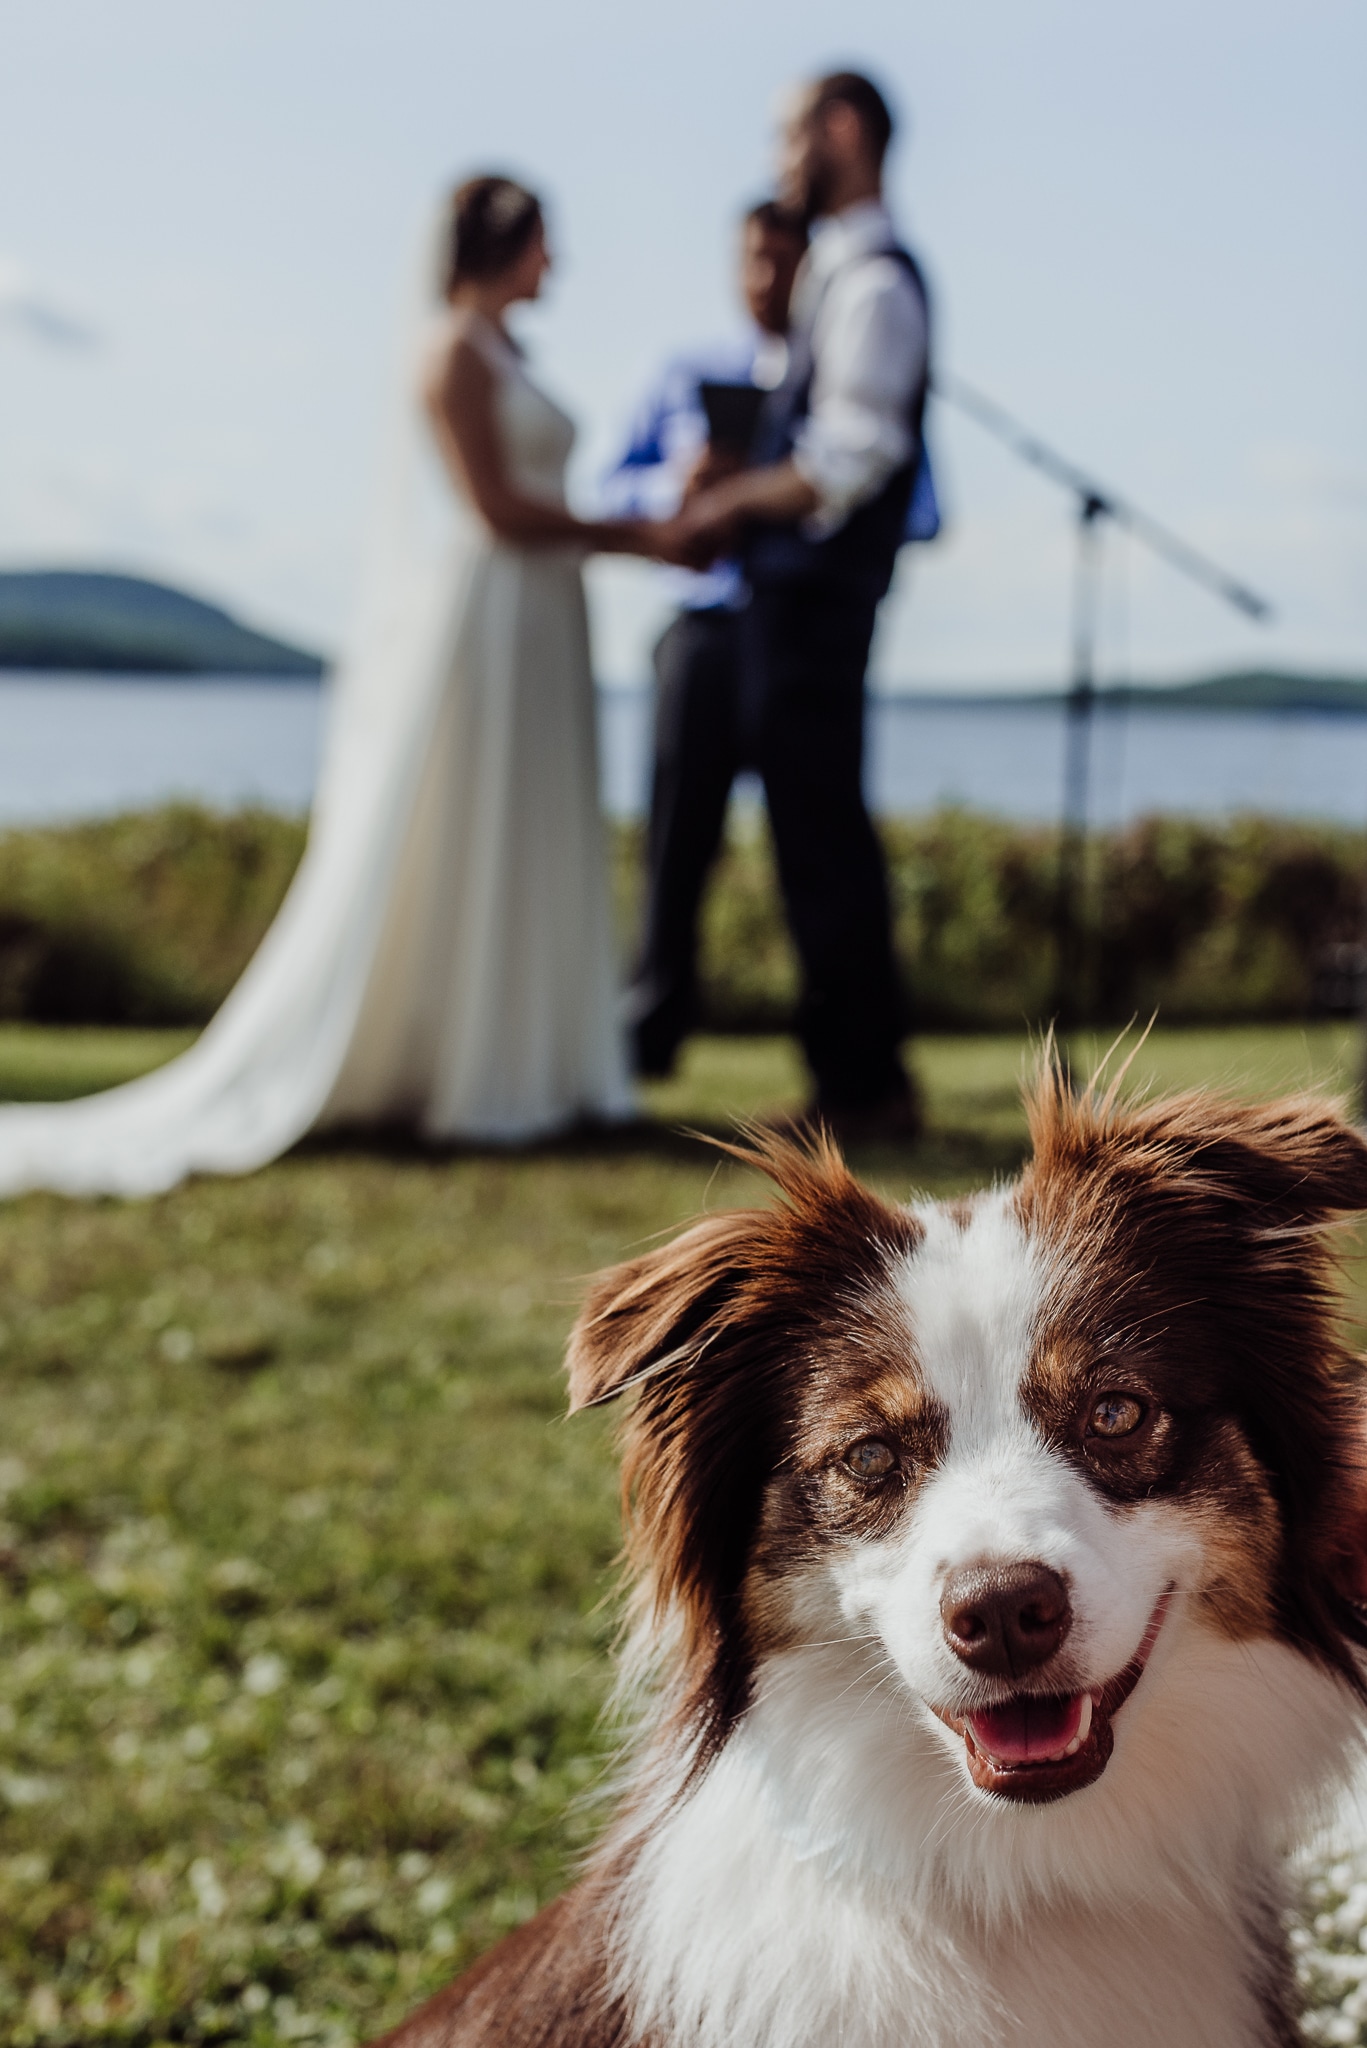 Dog photobombing a wedding